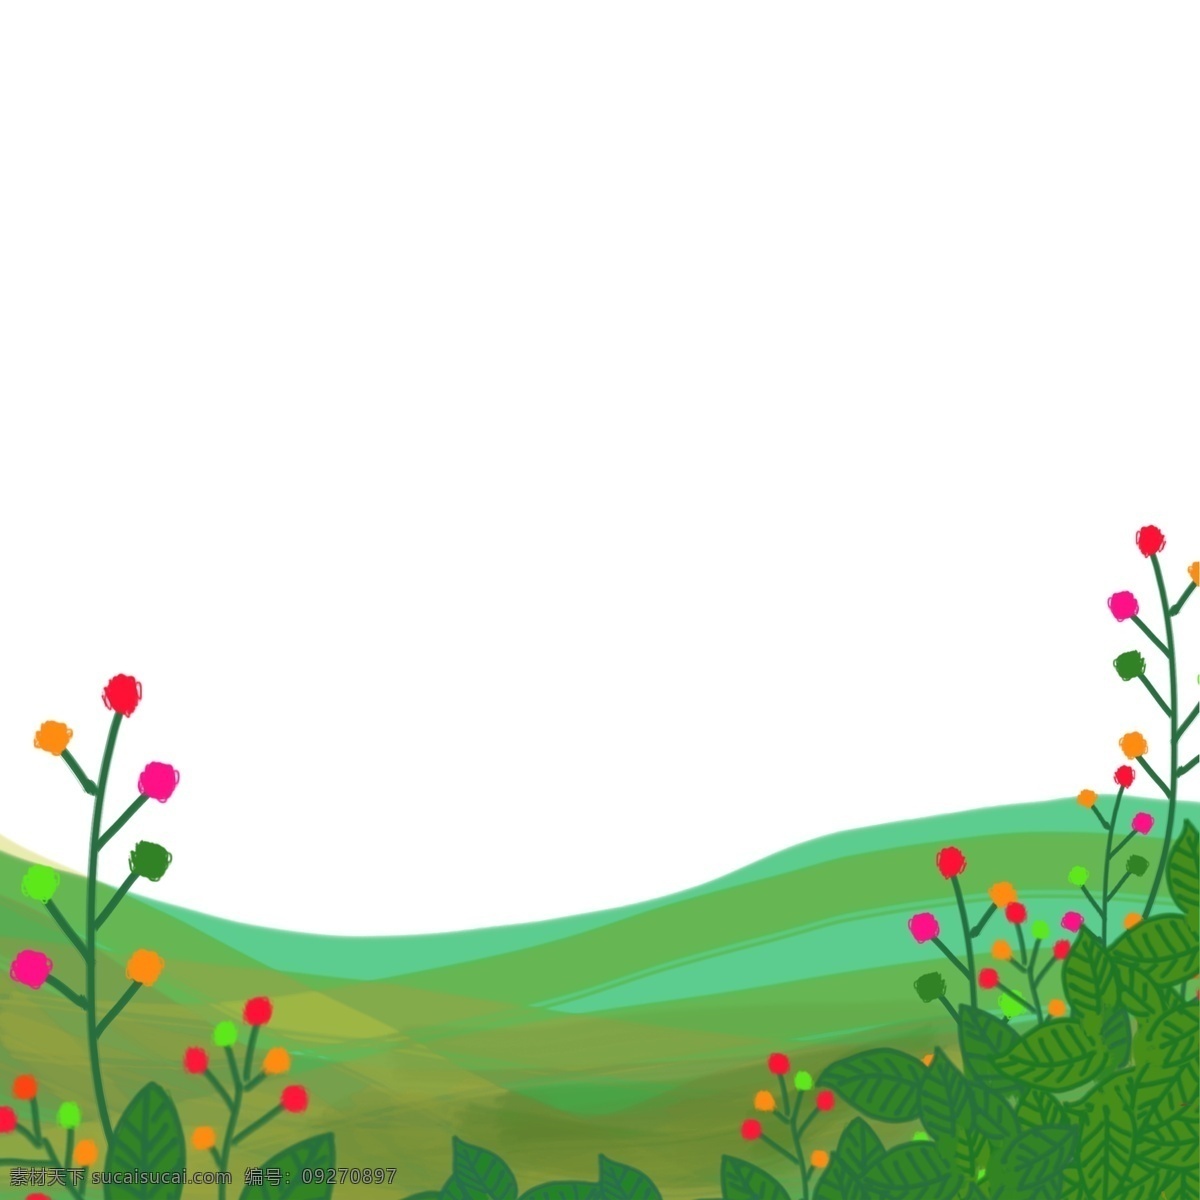 前景 花 树叶 山坡 手绘 插画 绿色 彩色 田野 野外 春天 夏天 郊游 旅游 户外 卡通